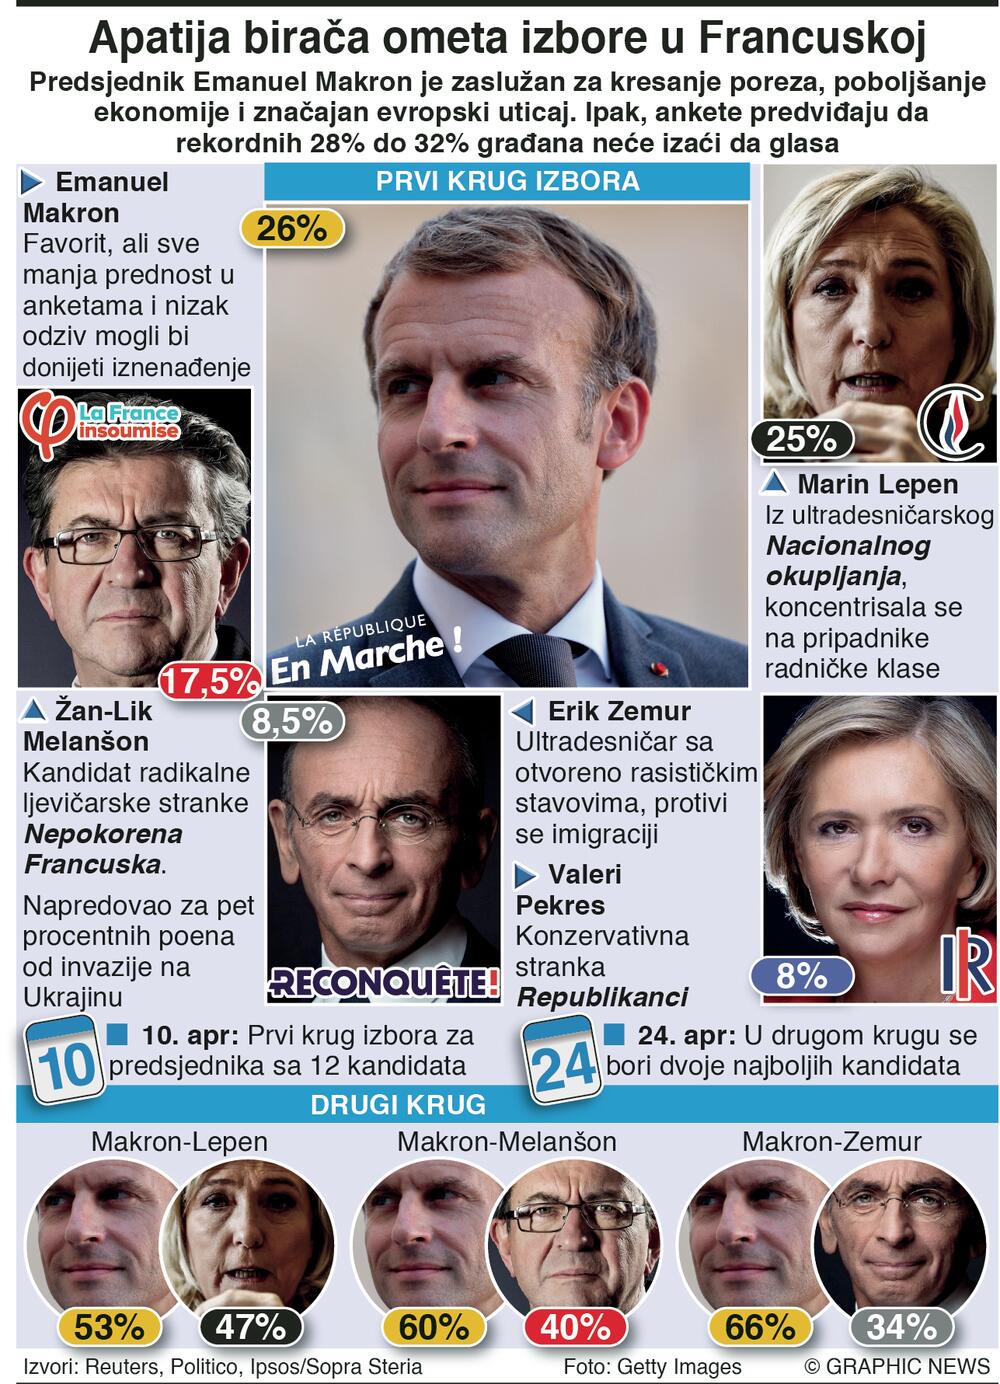 Razlika između Makrona i Le Penove sve manja